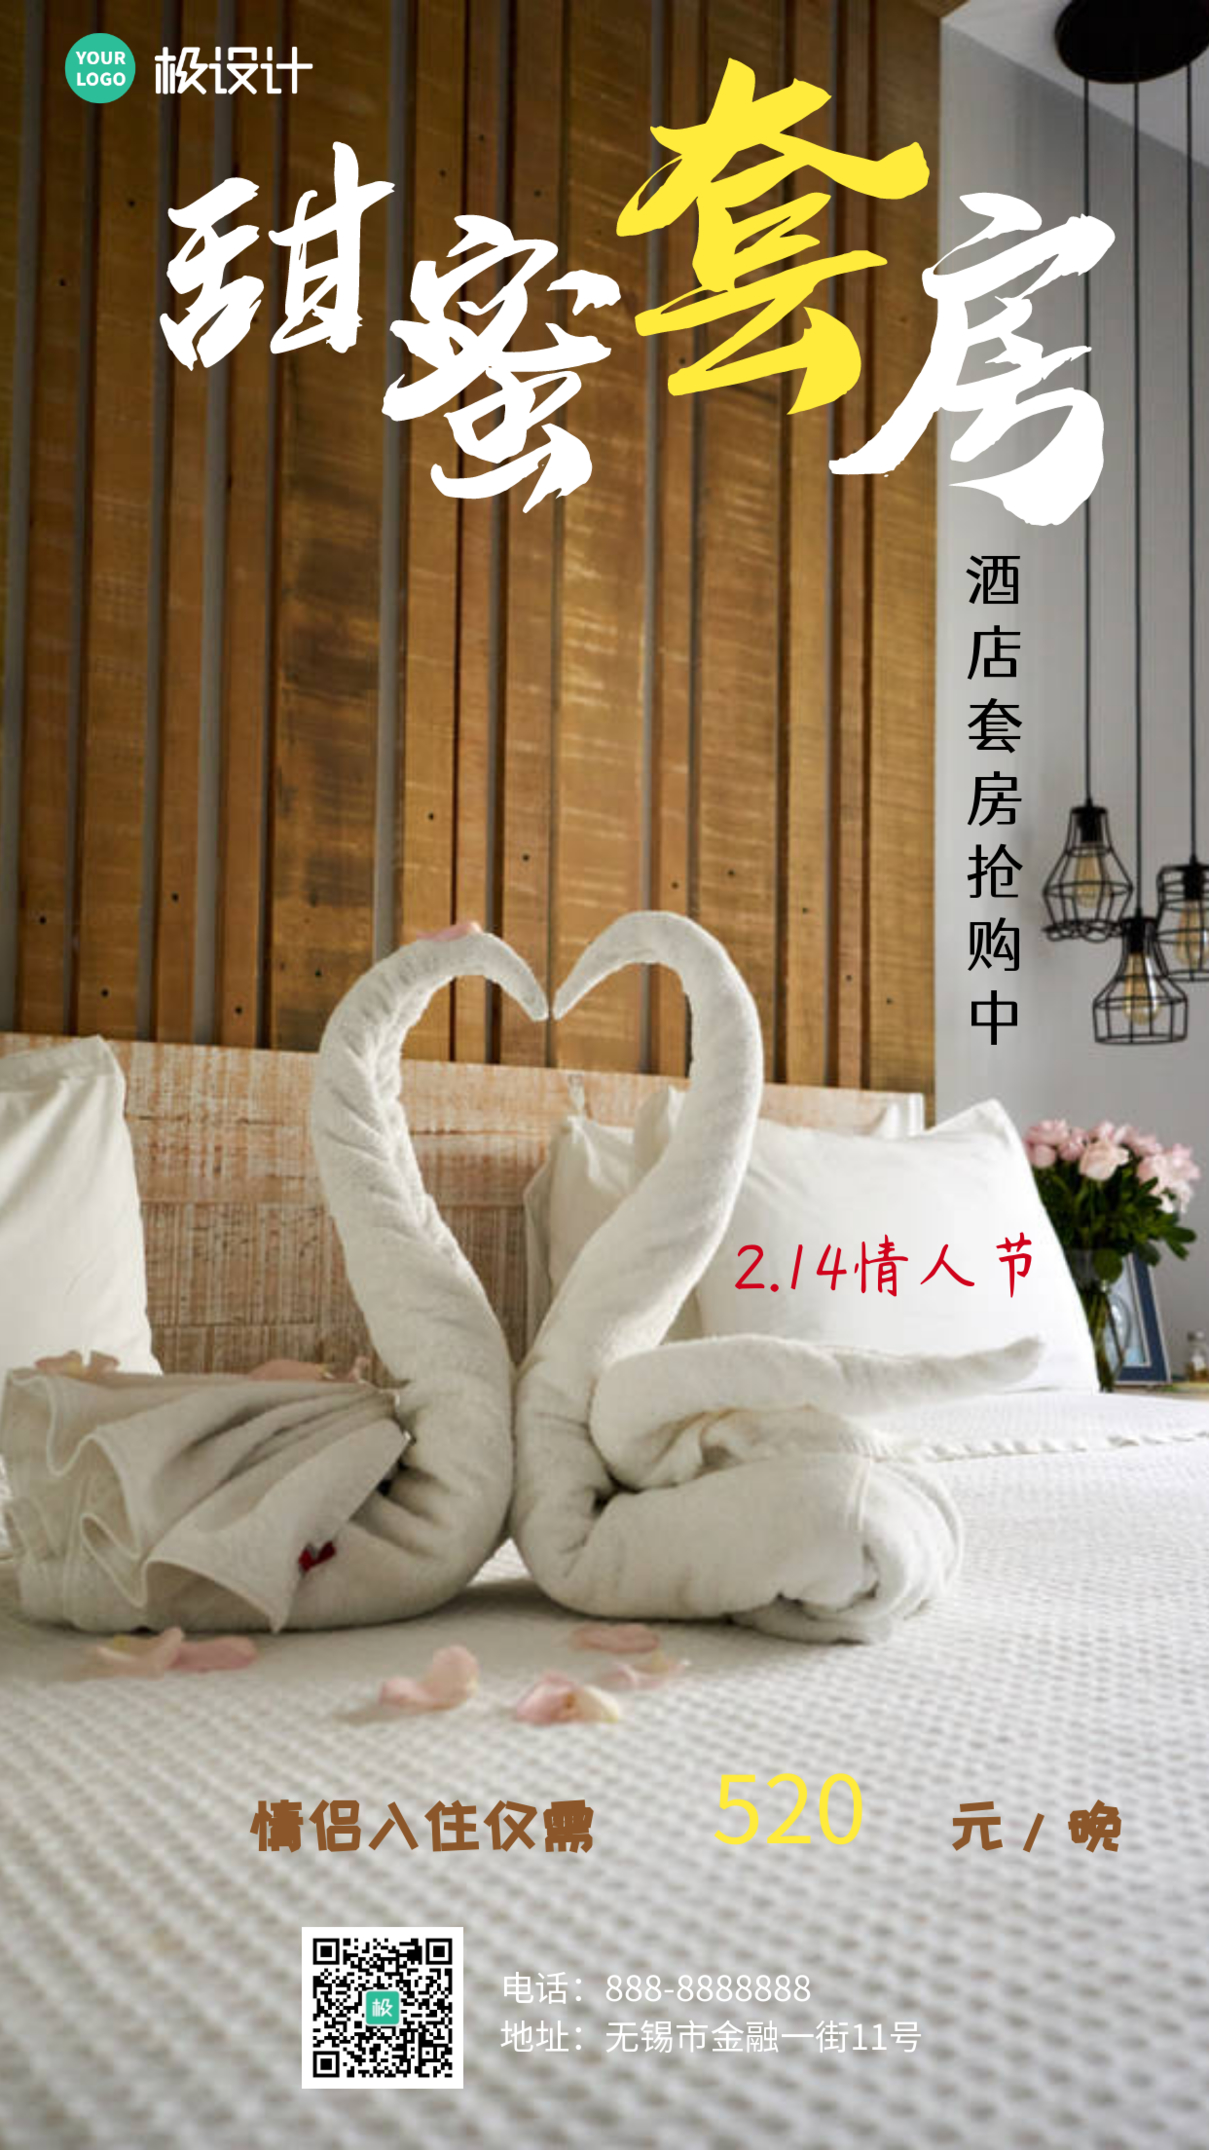 2.14情人节酒店甜蜜套房宣传手机海报